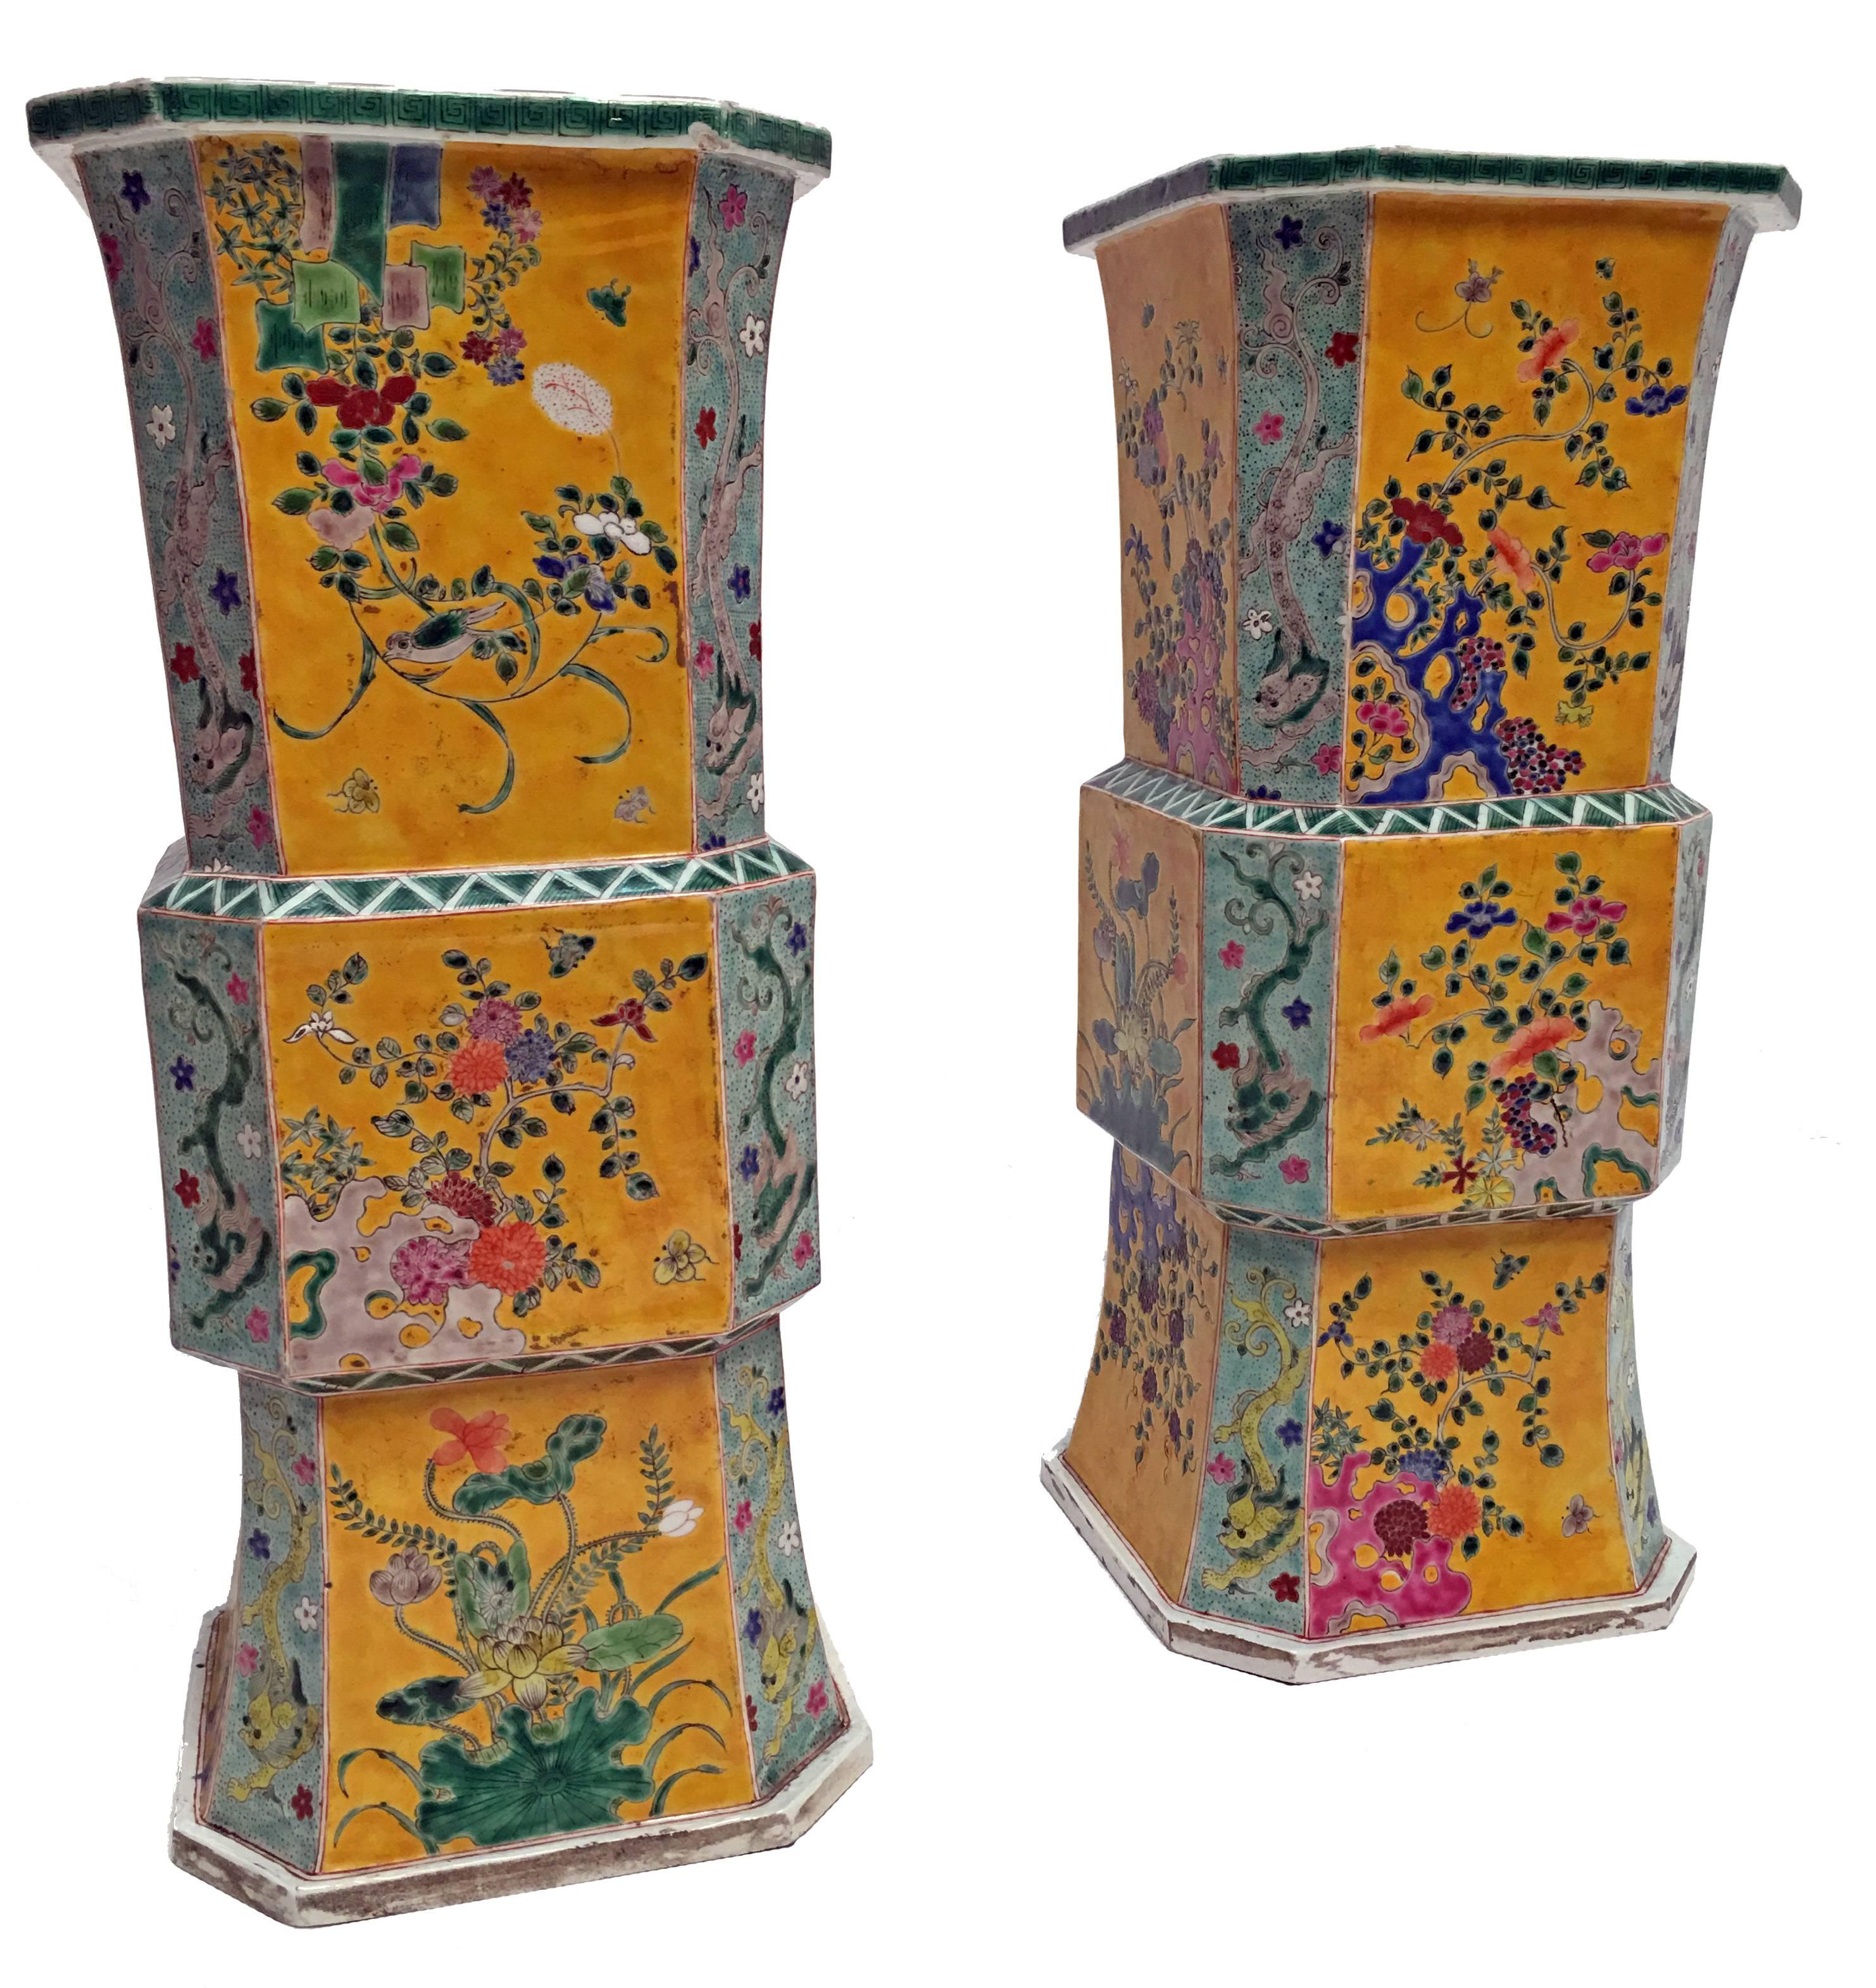 Une grande et extraordinaire paire de vases en porcelaine jaune de la période Meiji avec une décoration florale peinte à la main. Merveilleuses couleurs et présence, des vases vraiment remarquables. L'ensemble est en remarquable état d'ancienneté,